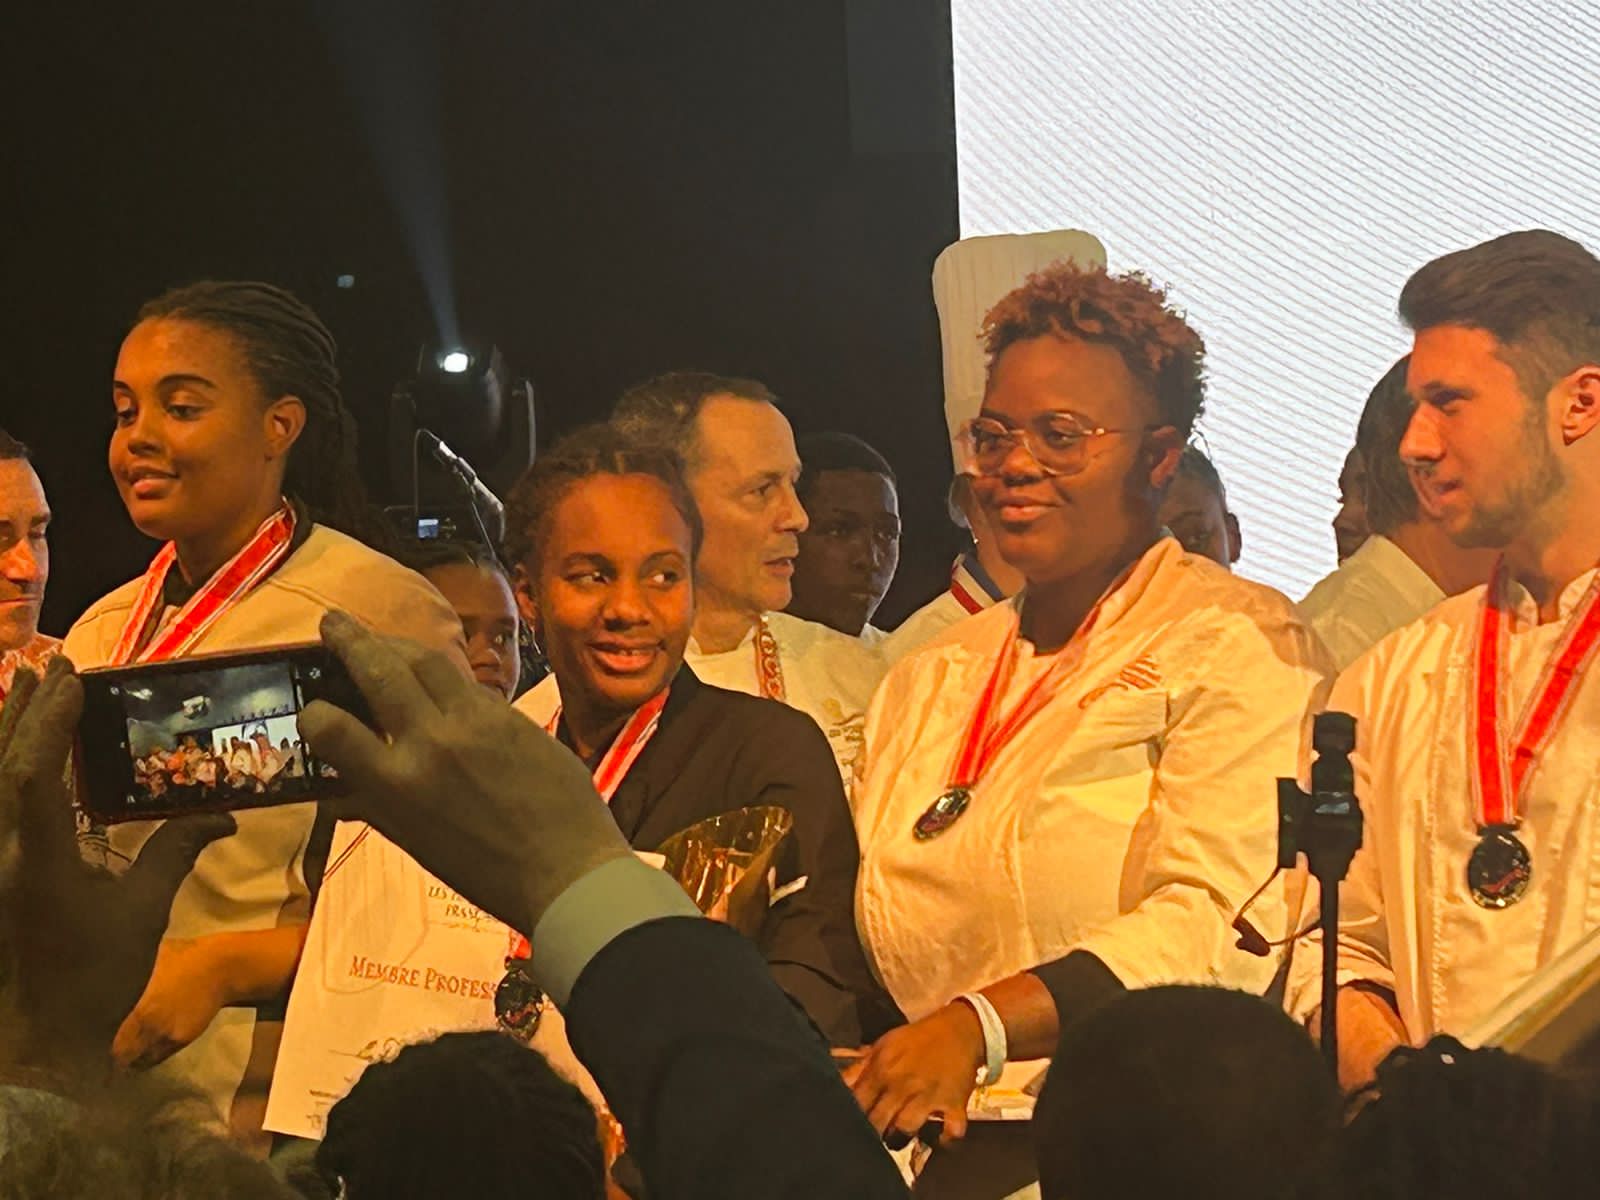     Sagasdom : victoire guadeloupéenne et trois Antillaises sur le podium du "Trophée Babette" 

